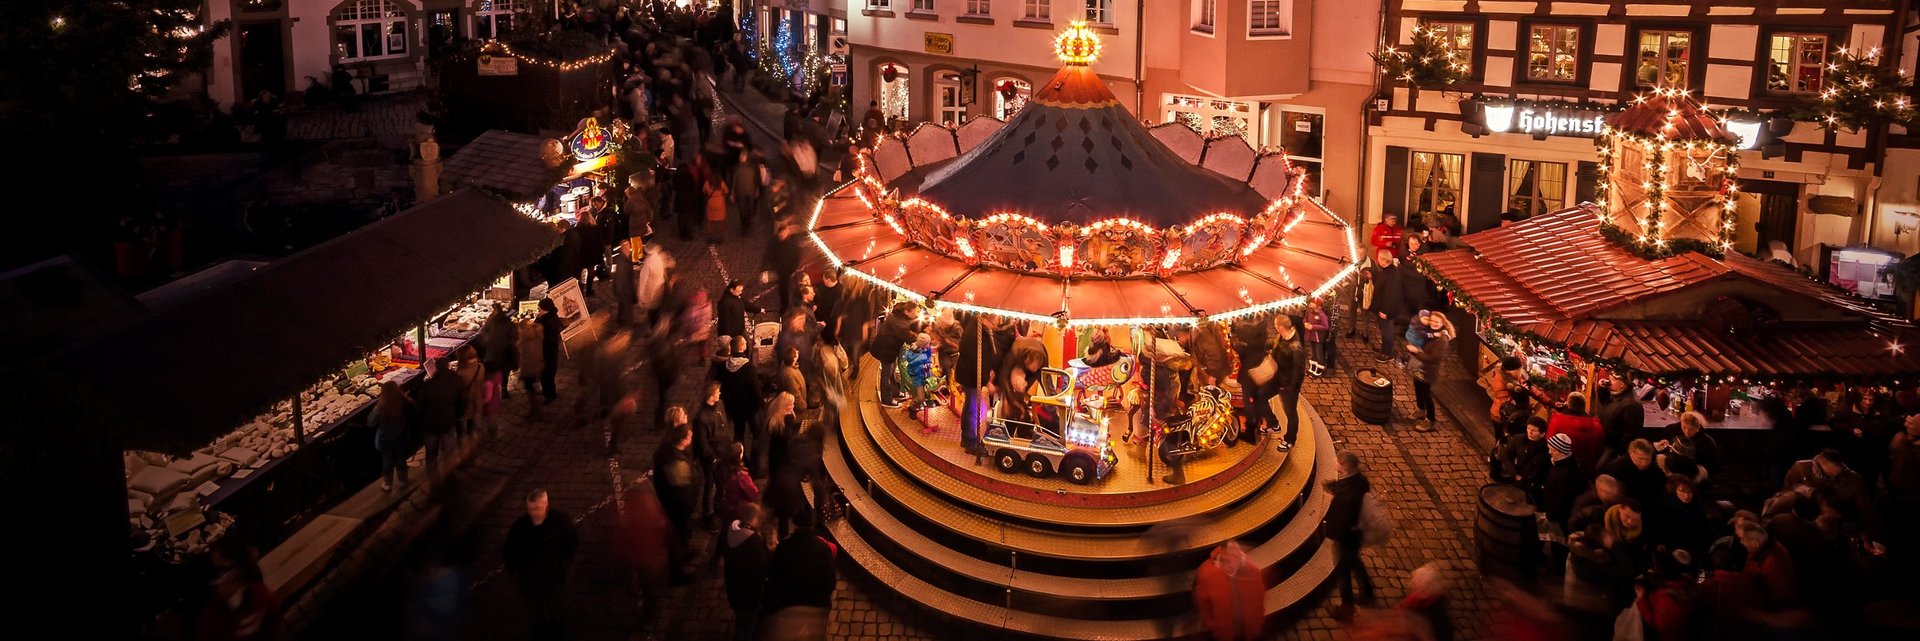 Altdeutscher Weihnachtsmarkt Bad Wimpfen | © H. Sieling, Stadt Bad Wimpfen